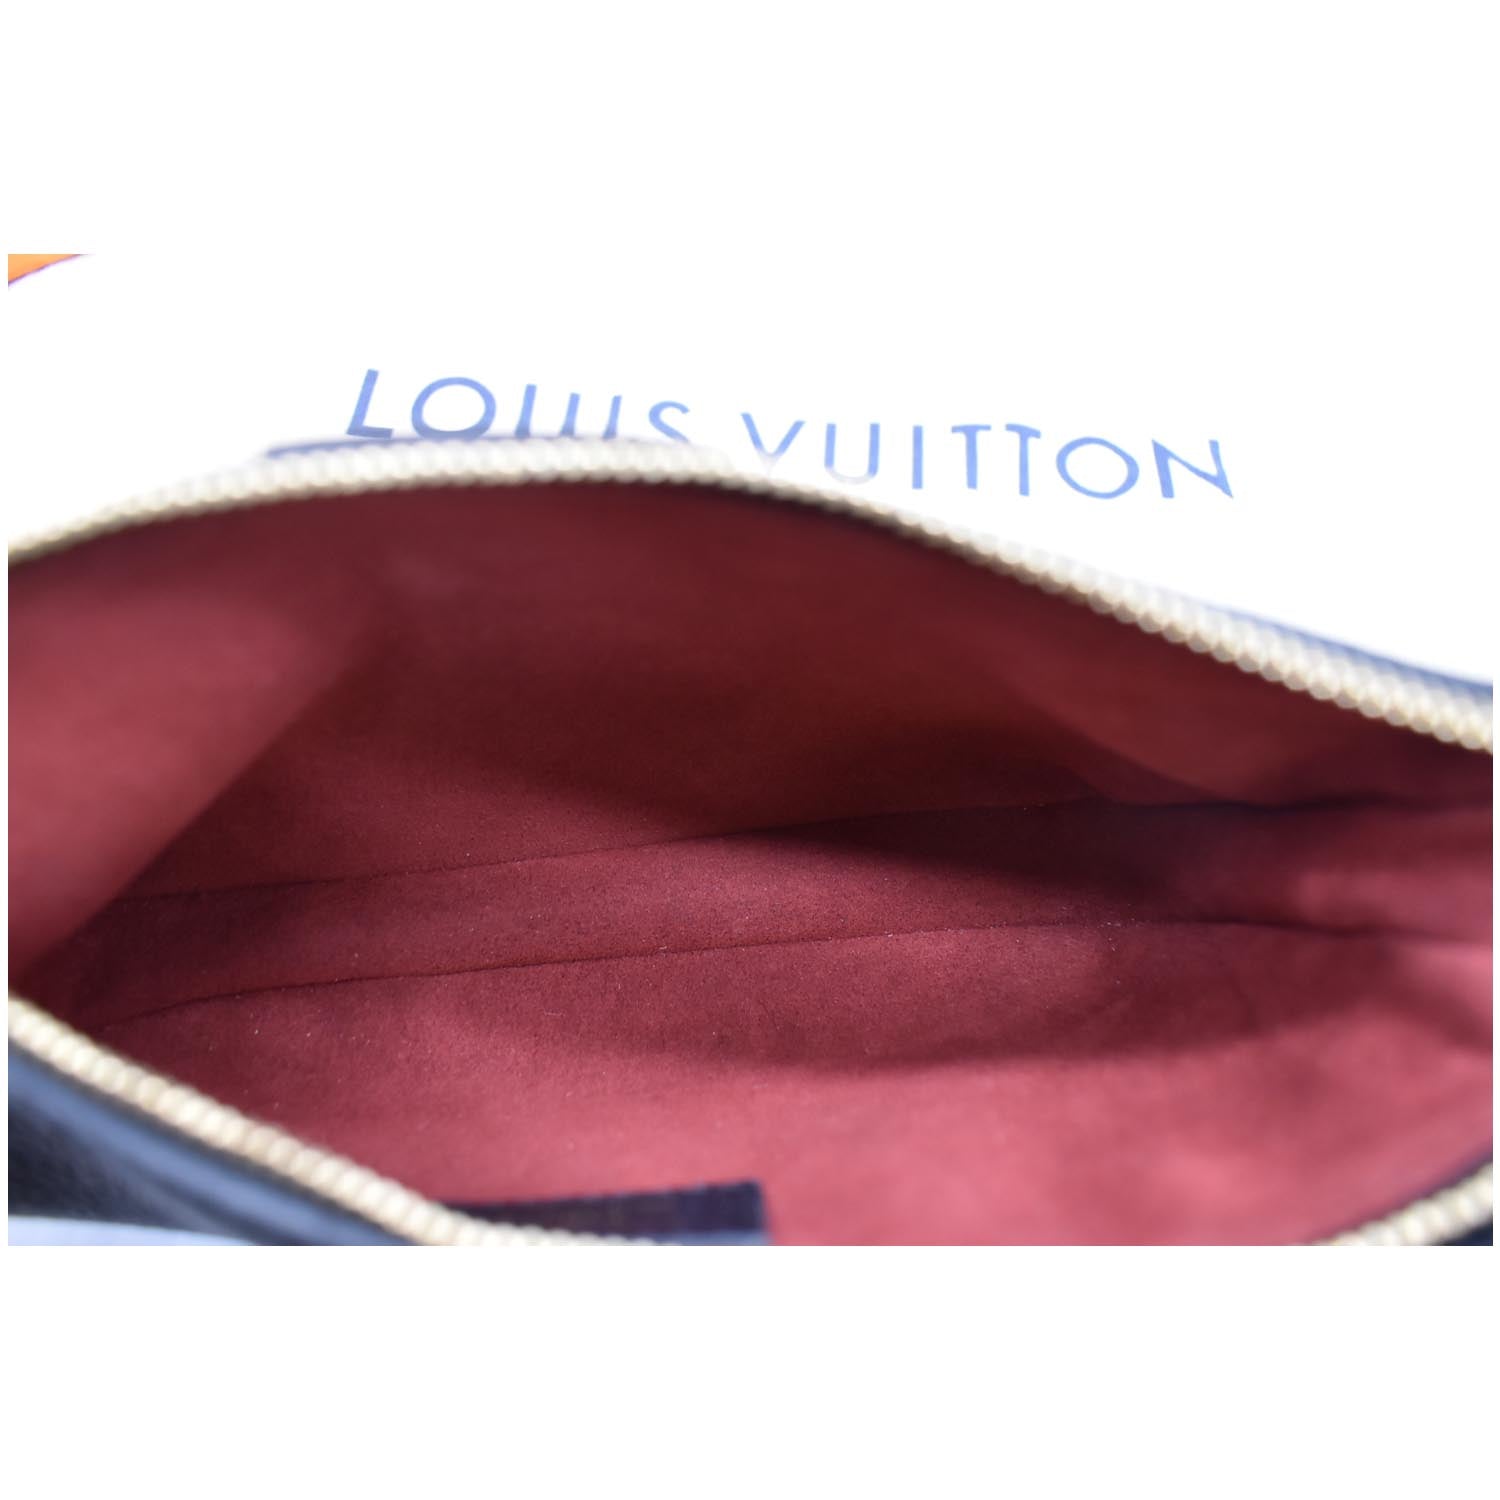 FWRD Renew Louis Vuitton Empreinte Multi Pochette Accessoires